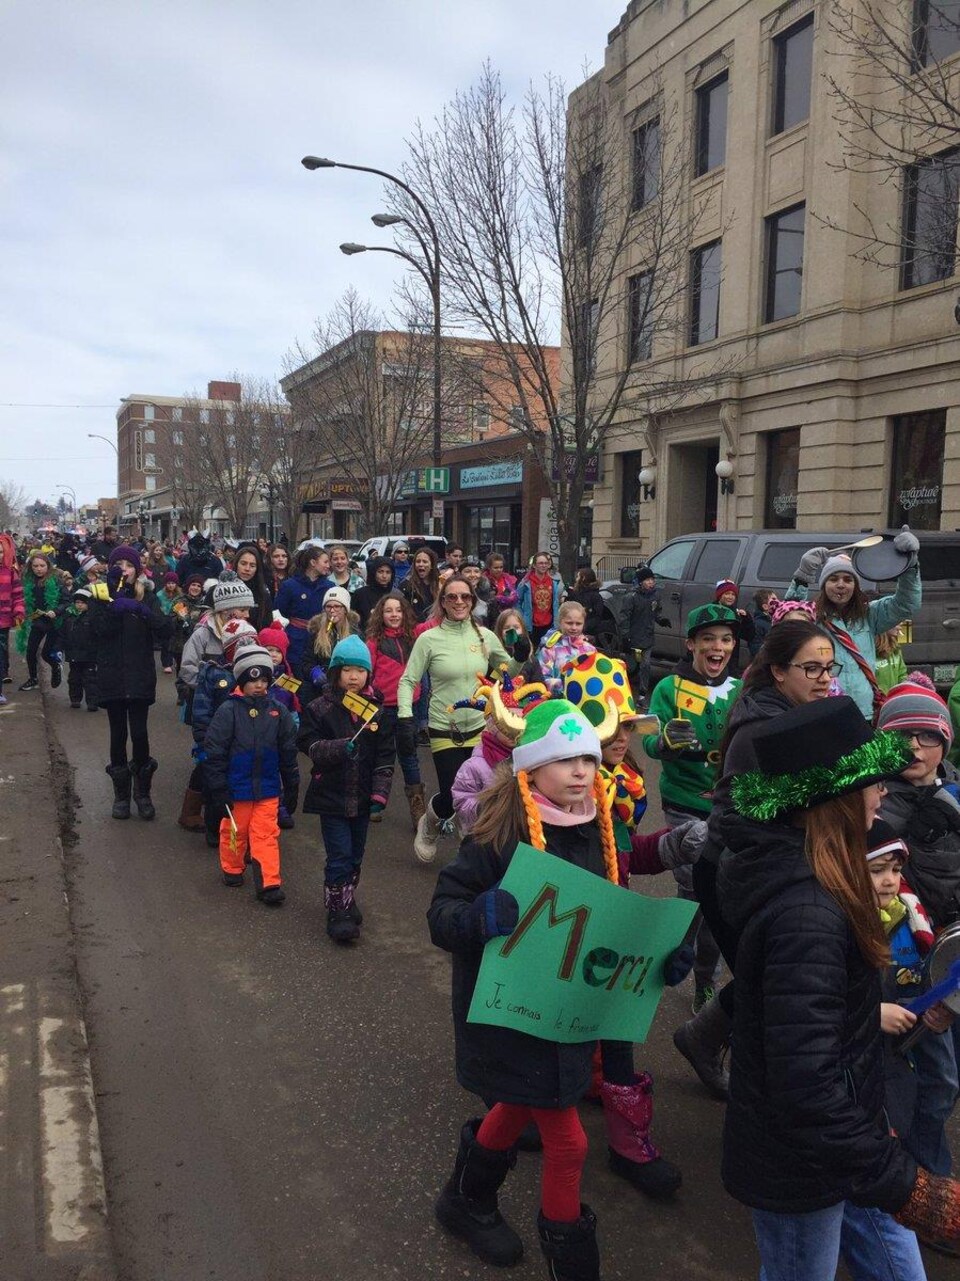 Des dizaines d'adultes et d'enfants dont certains tiennent de petits drapeaux fransaskois marchent dans une rue.